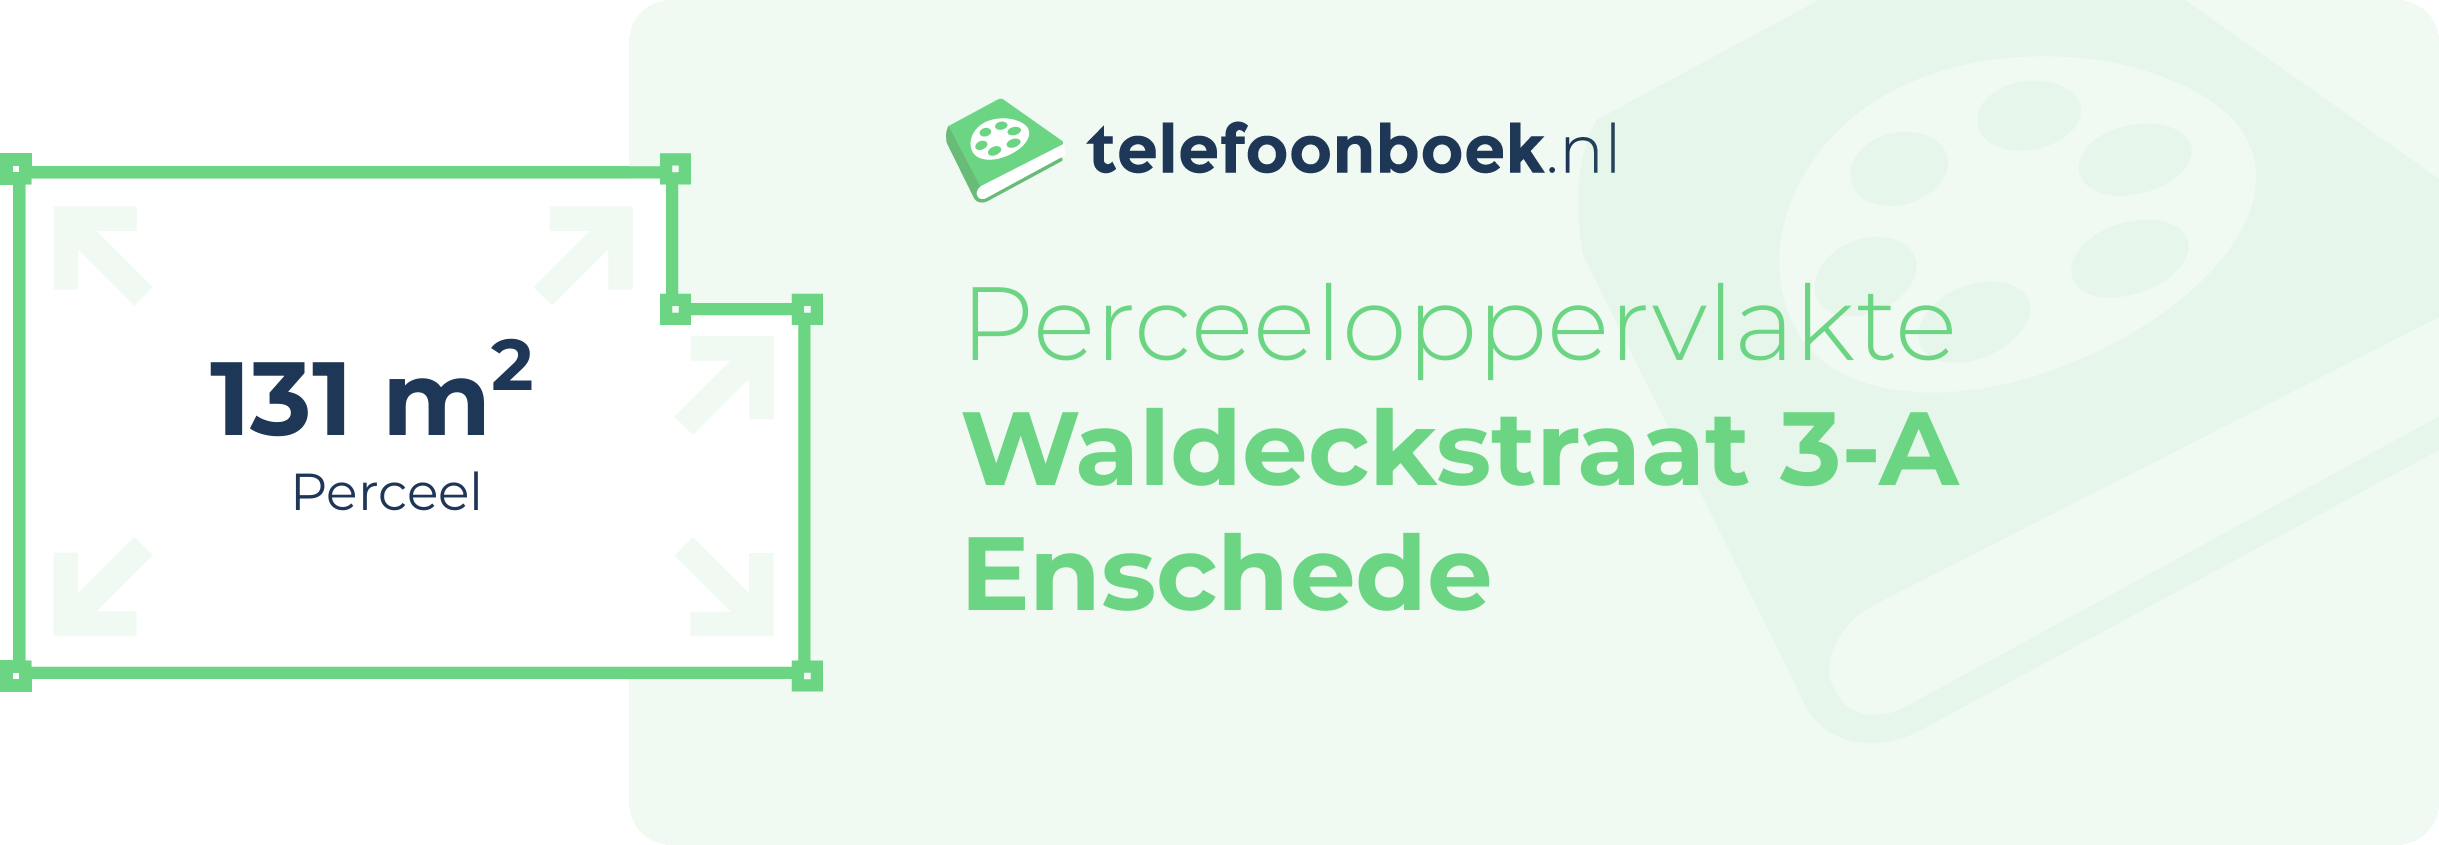 Perceeloppervlakte Waldeckstraat 3-A Enschede